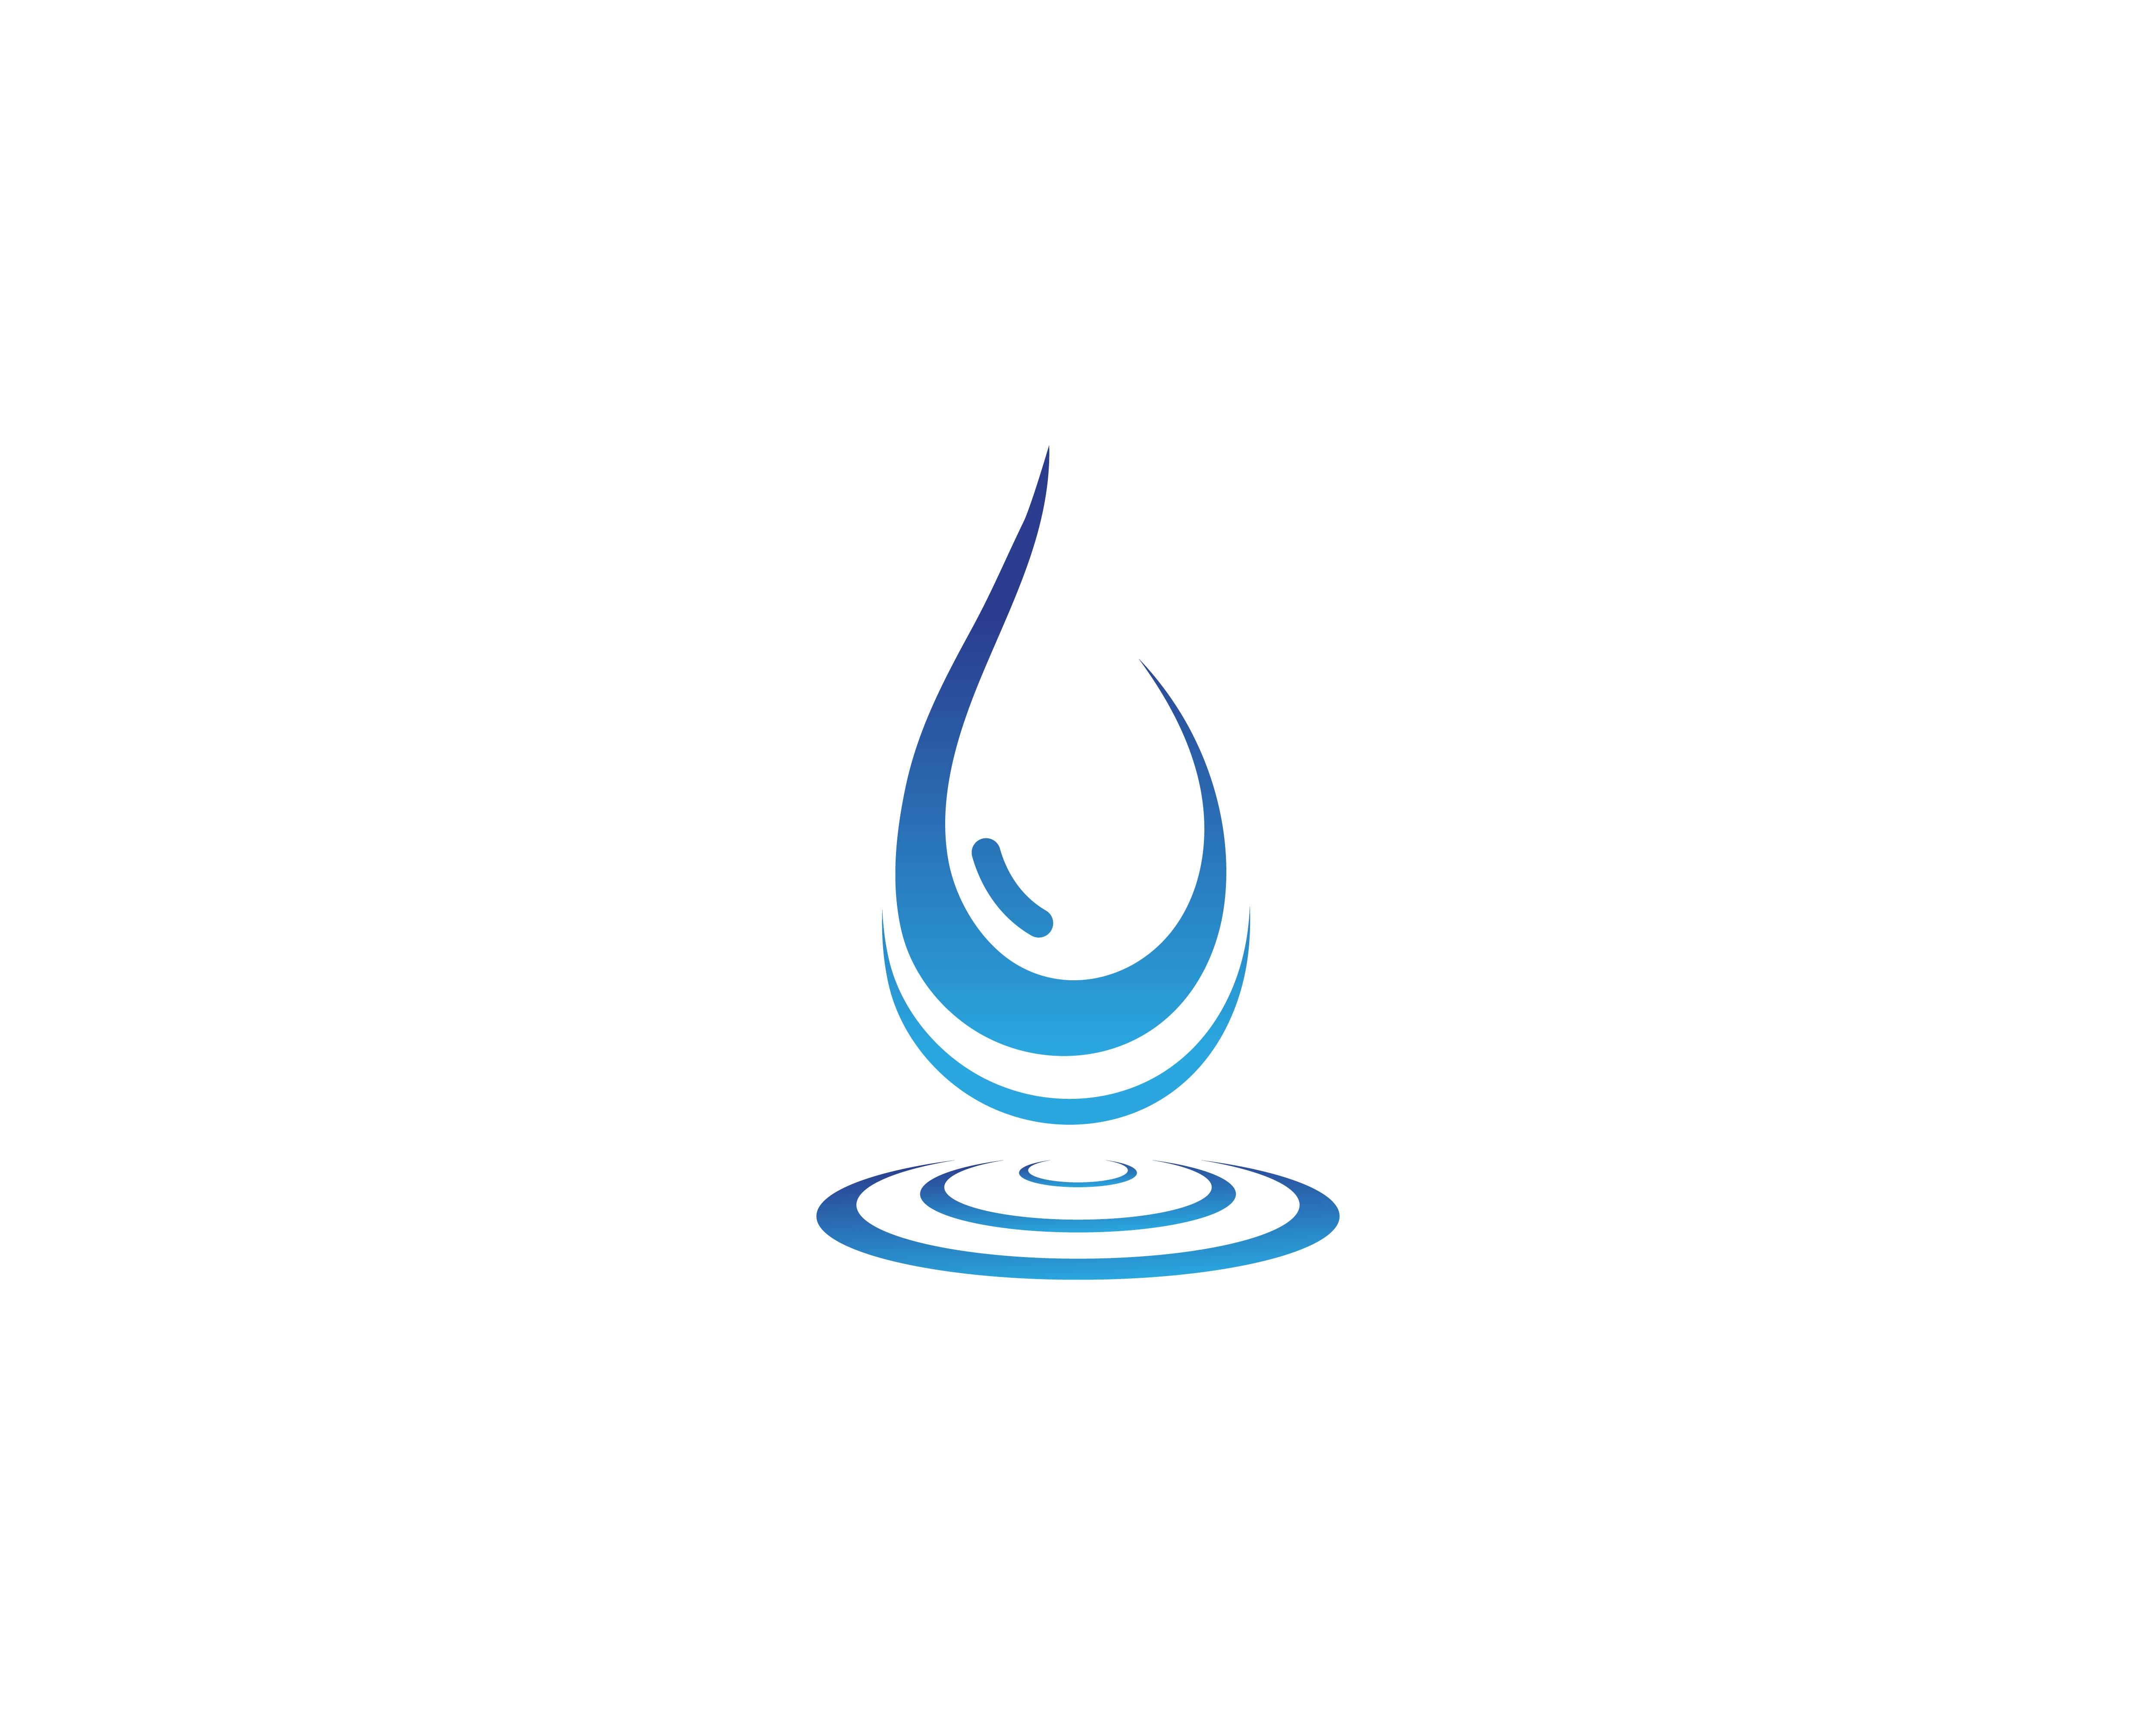 Water Drop Logo Template Vector 597115 Vector Art At Vecteezy